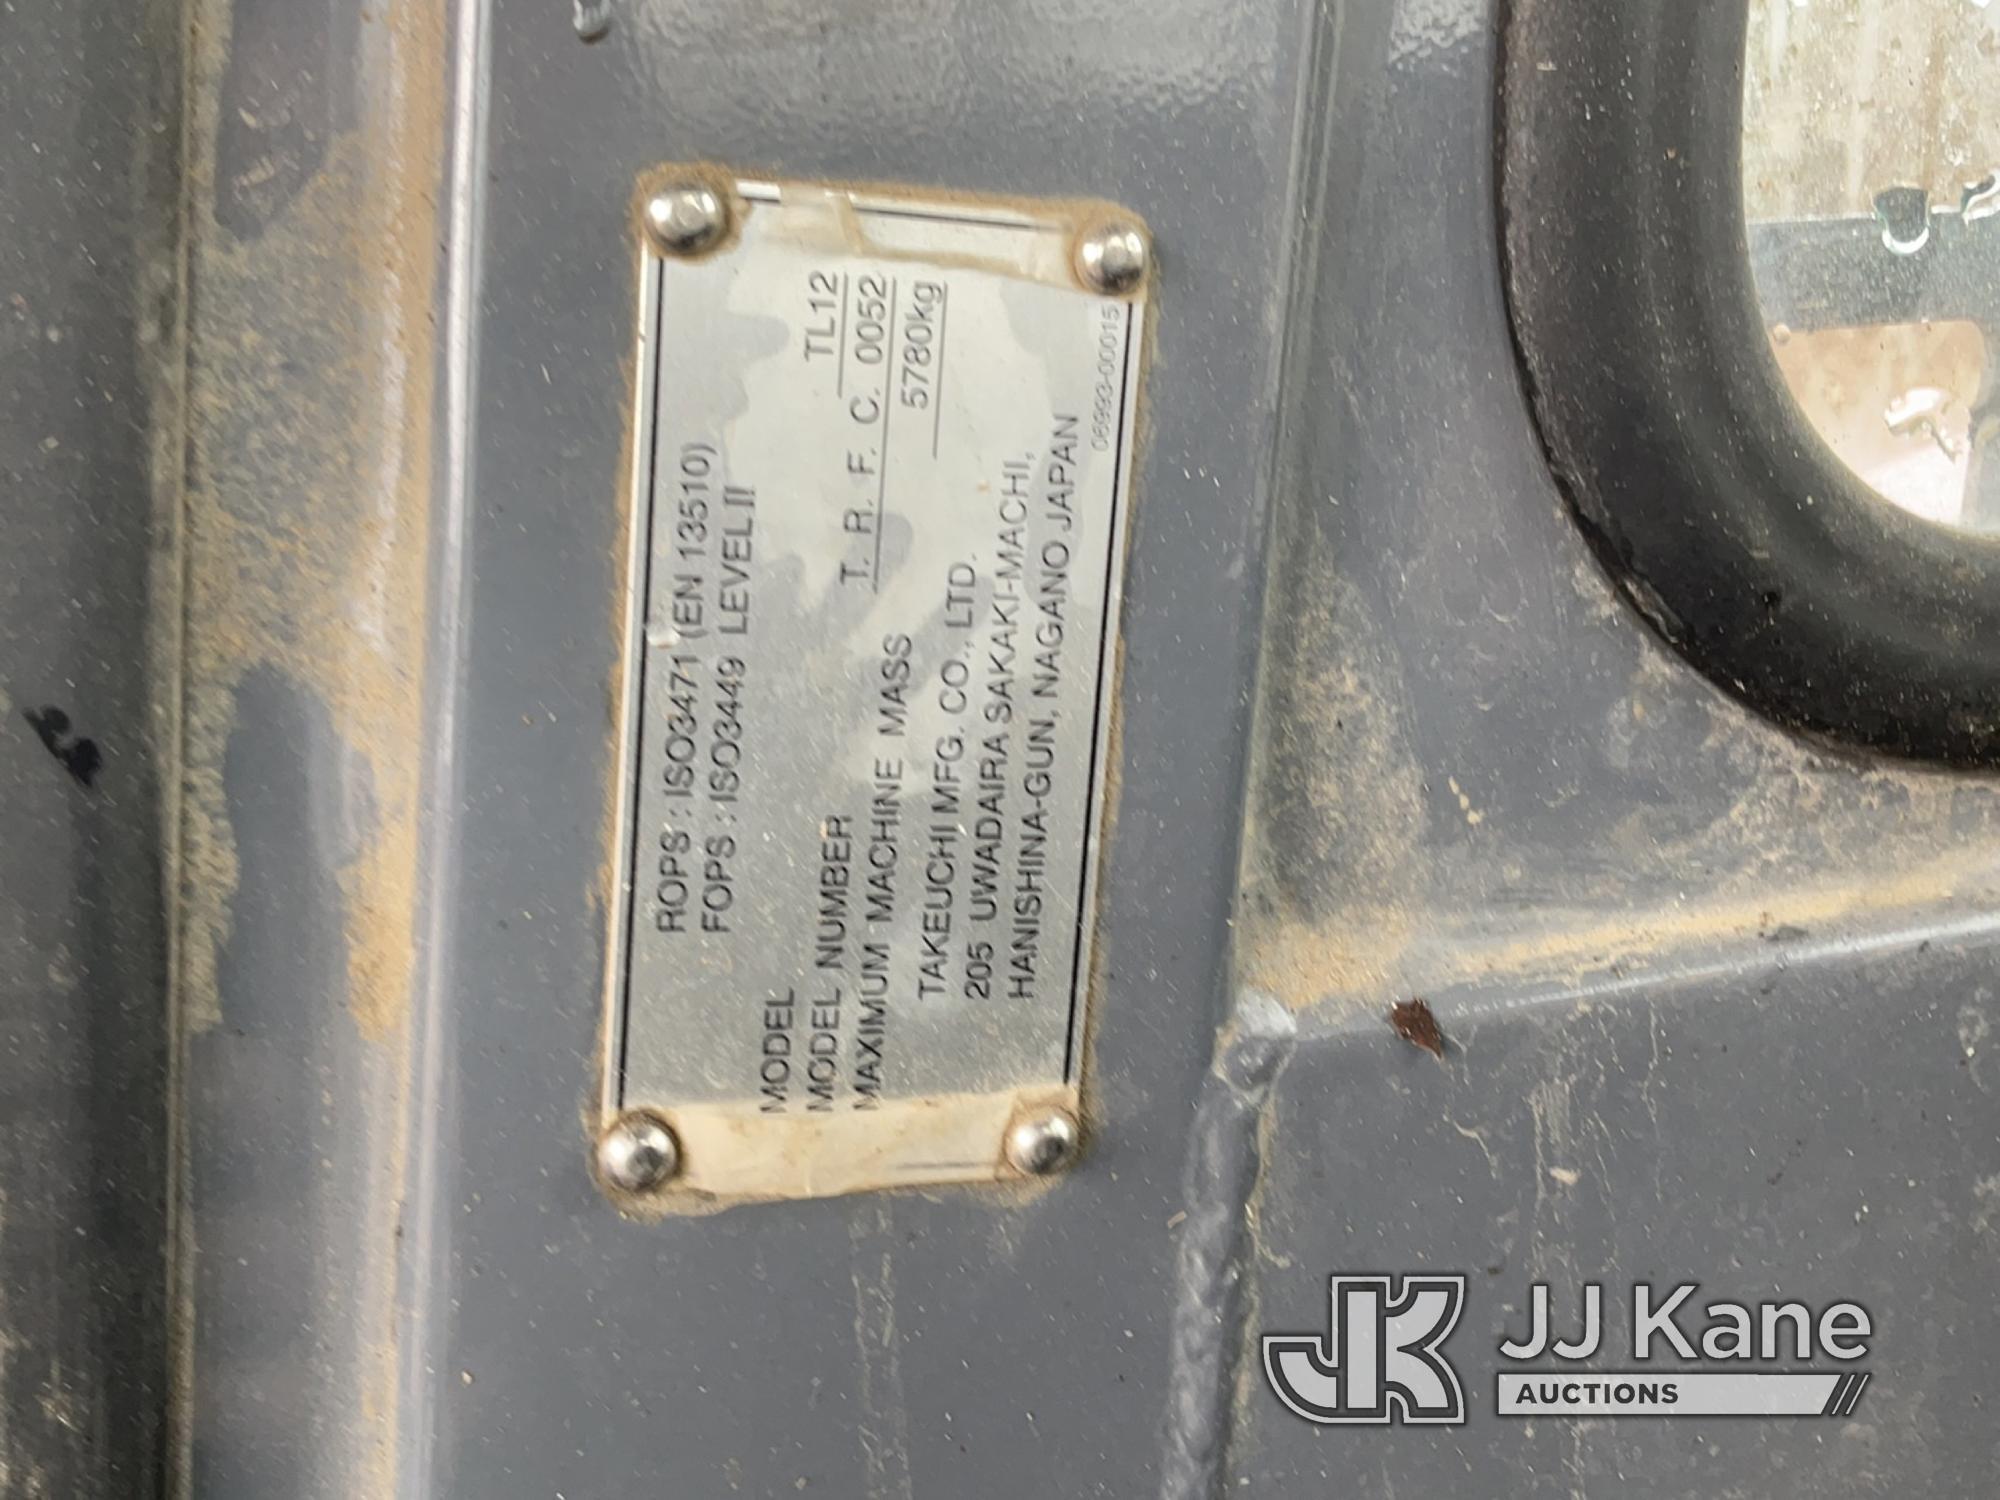 (Bagley, MN) 2014 Takeuchi TL12 Tracked Skid Steer Loader, Electrical Co-Op Owned, Garage Kept Runs,